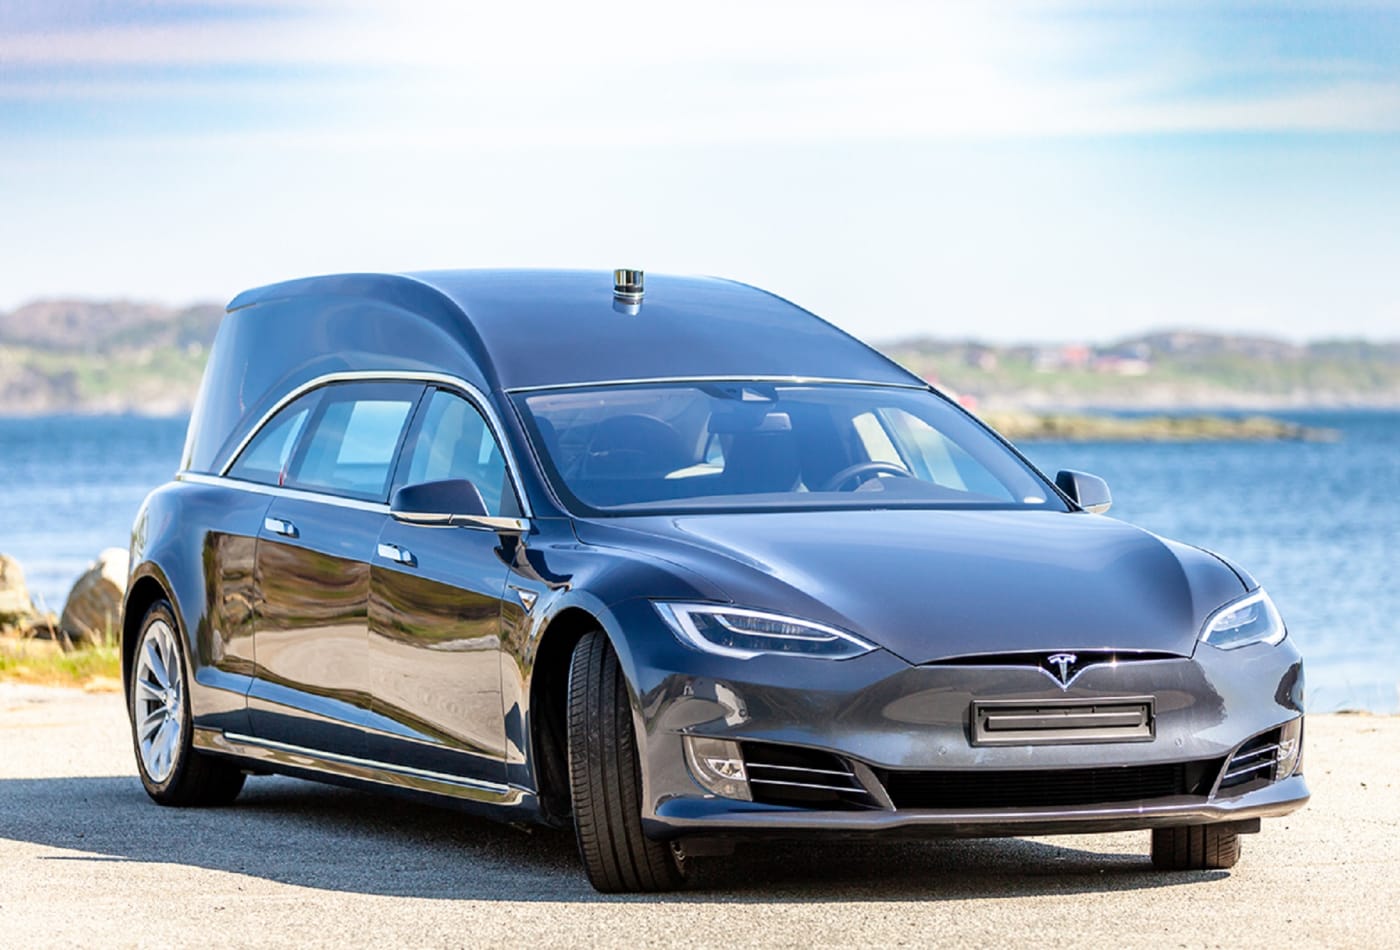 H Tesla ταράζει τα νερά της ευρωπαϊκής αυτοκινητοβιομηχανίας